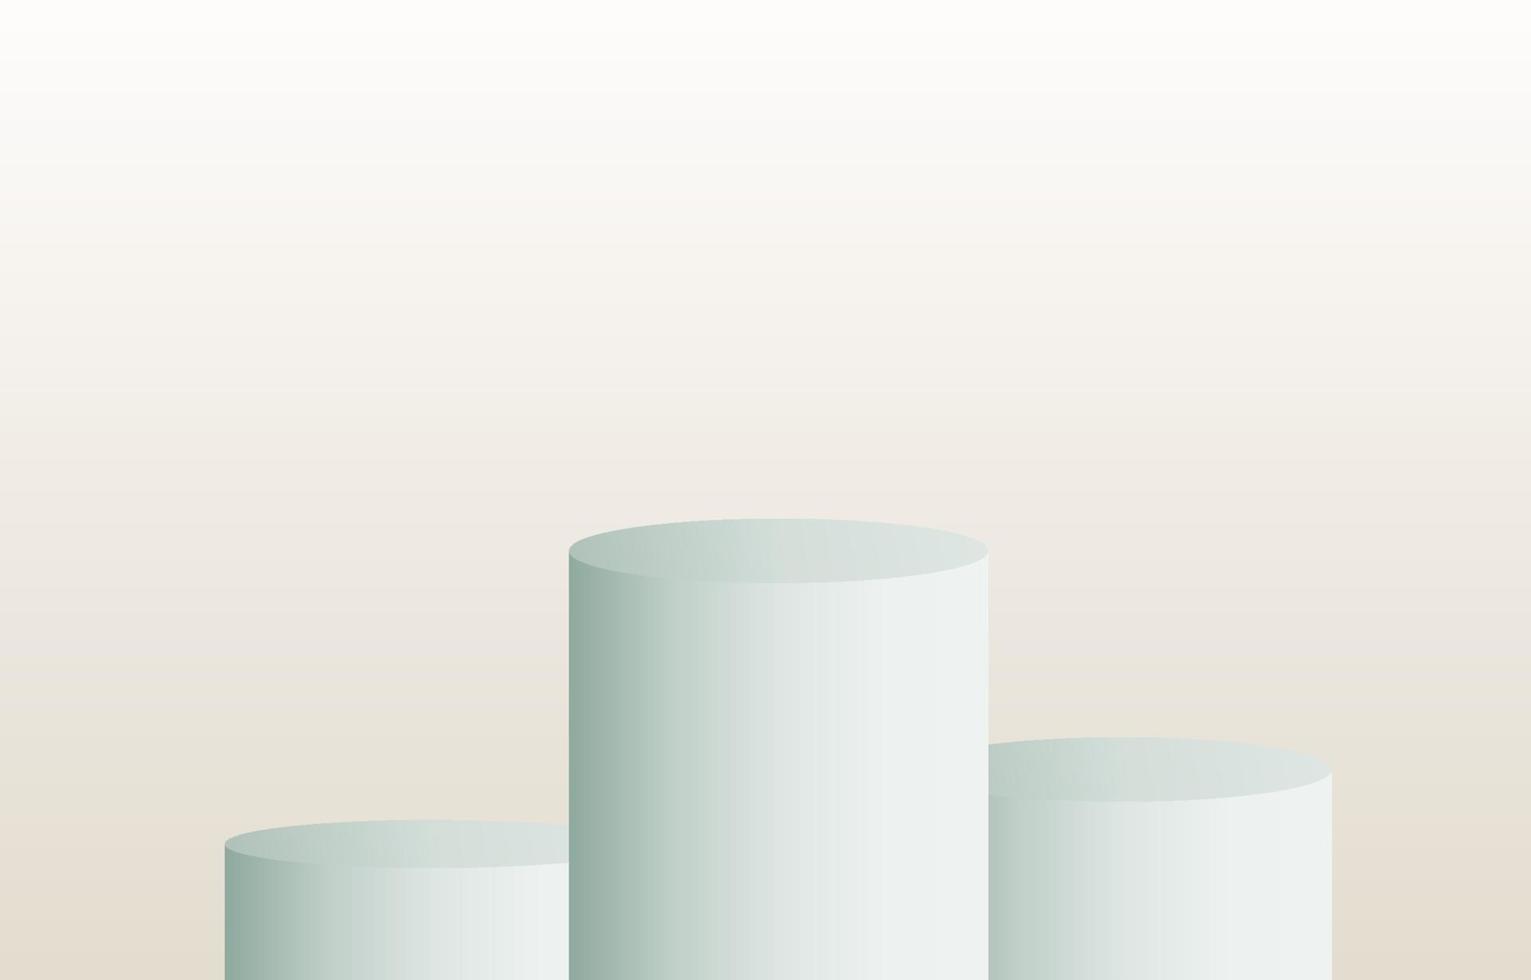 podium de piédestal de cylindre 3d réaliste pastel avec fond pastel. plate-forme géométrique de rendu vectoriel abstrait. présentation de l'affichage du produit. scène minimale.